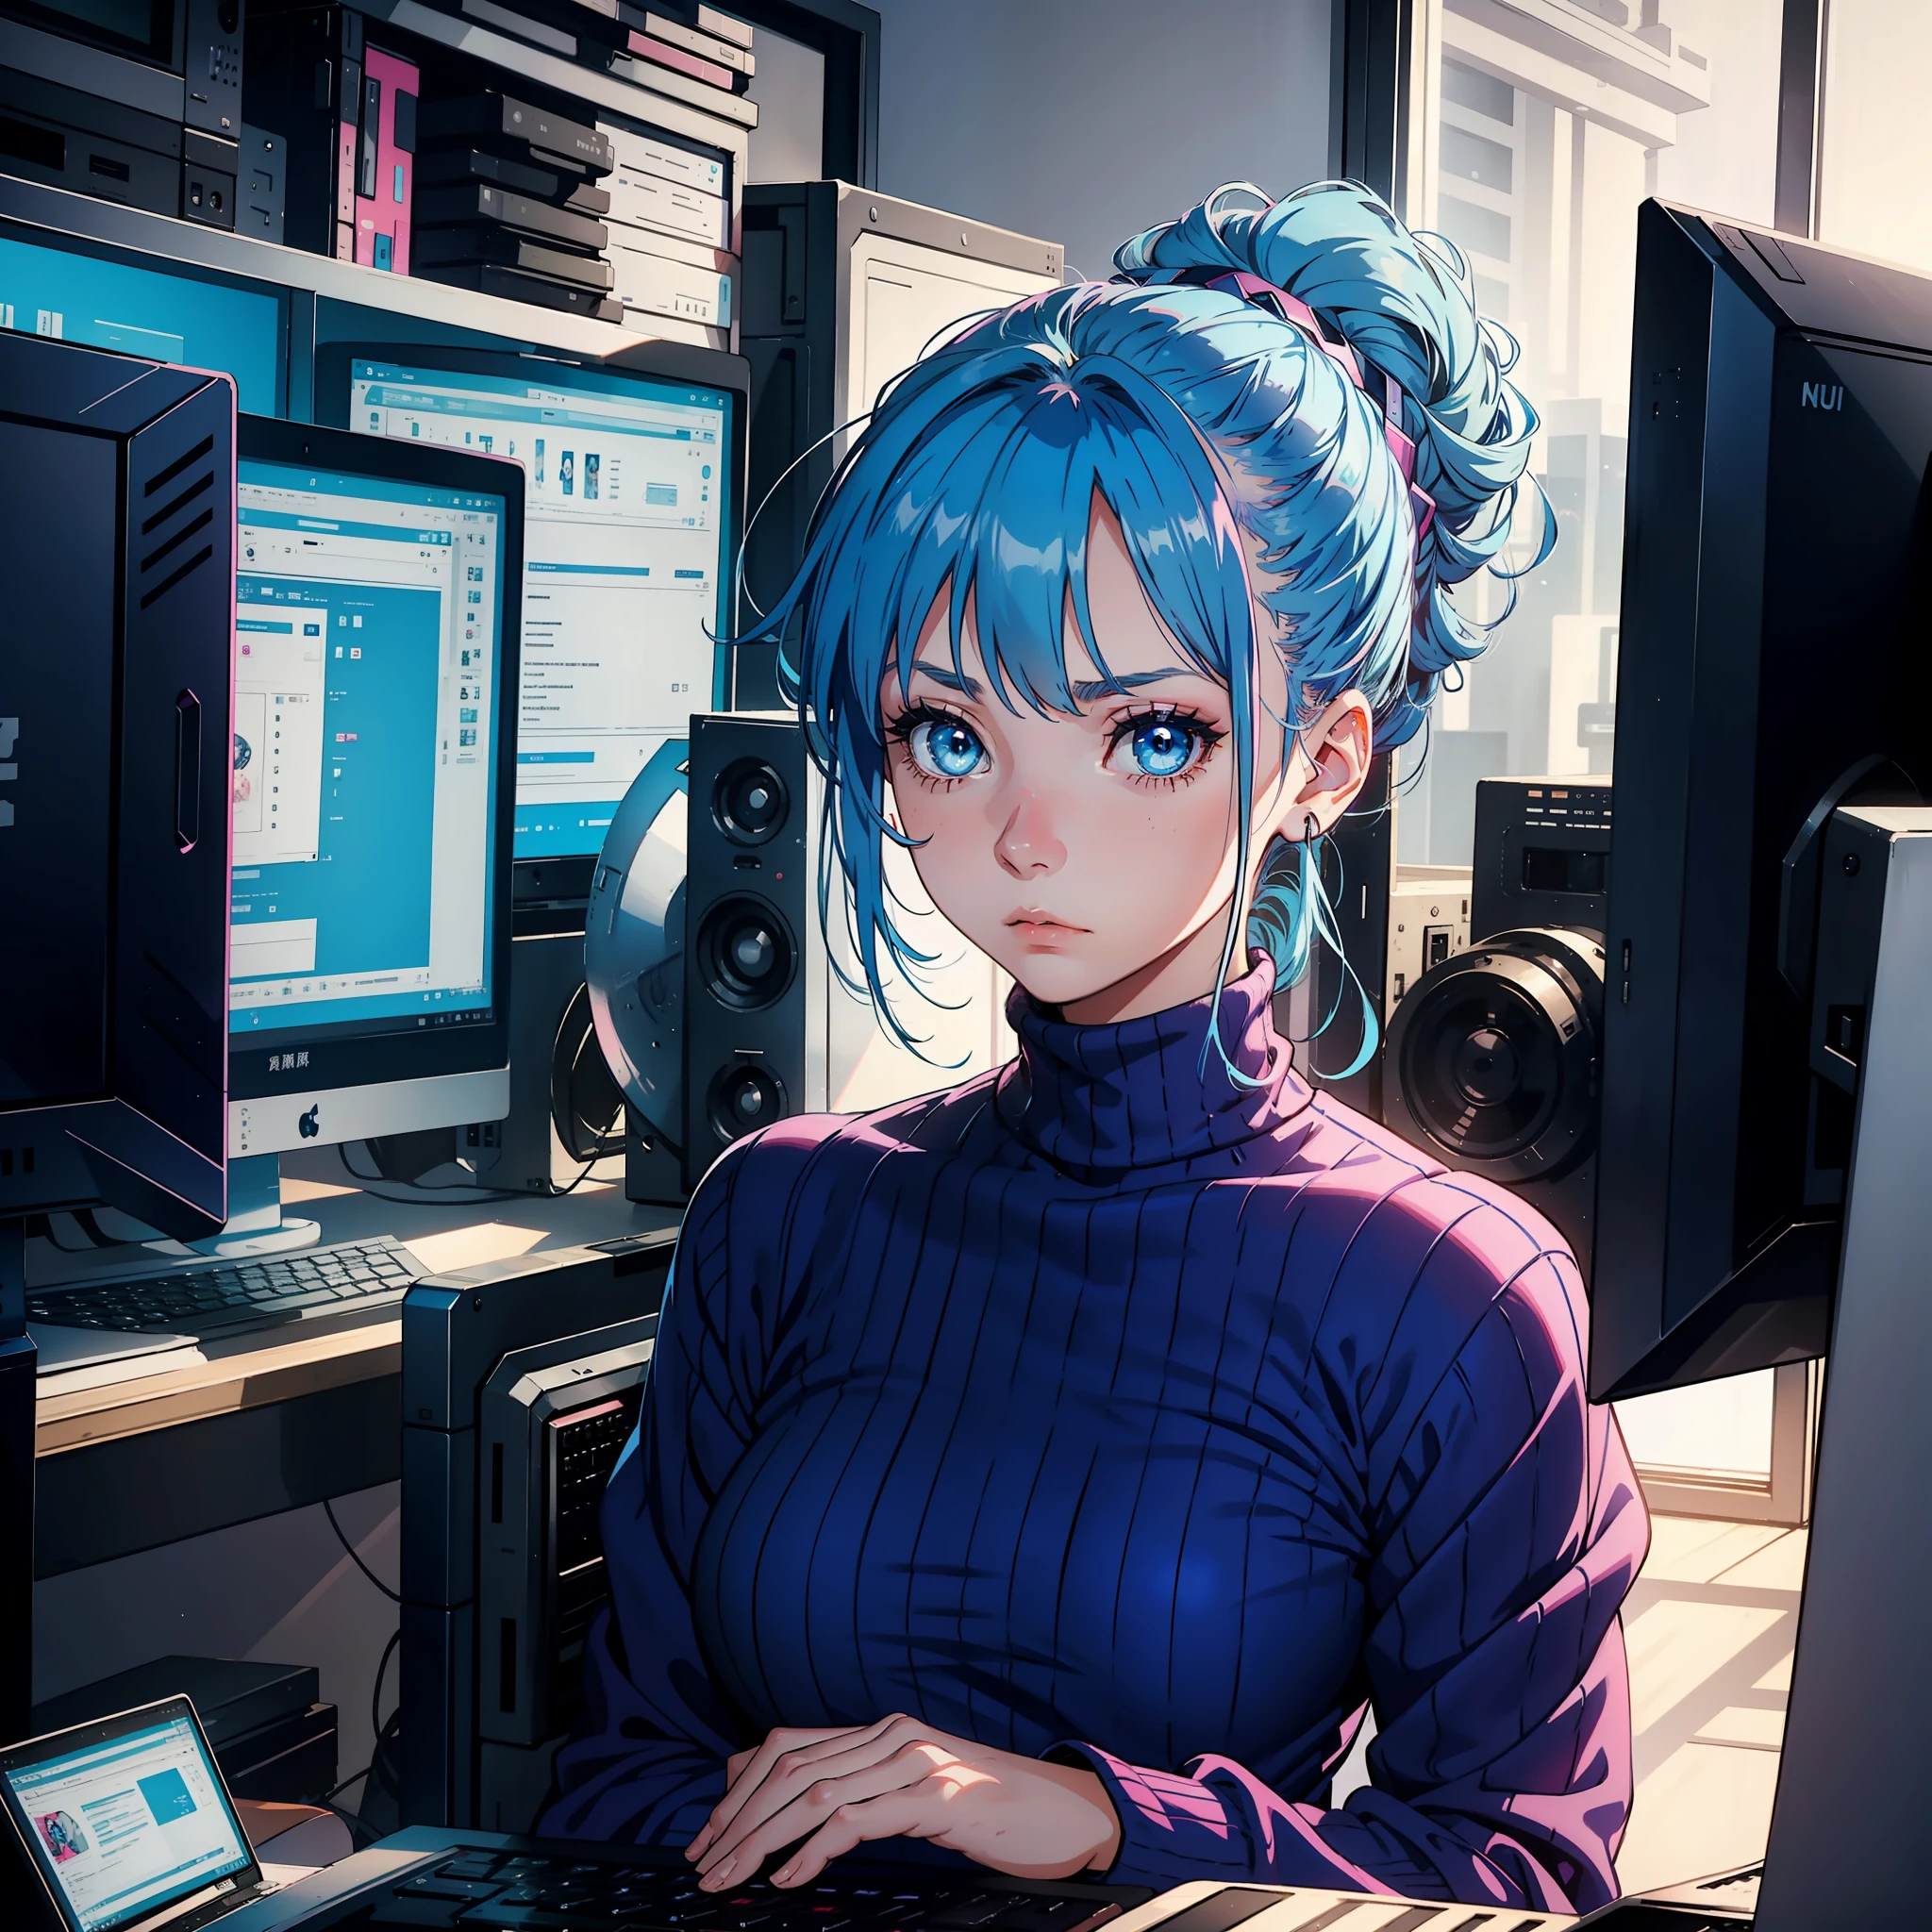 一名 20 岁蓝头发女孩, 蓝眼睛, 发髻, 高领粉色连衣裙, 看着电脑屏幕, 悲伤的表情, 低头, 独自的